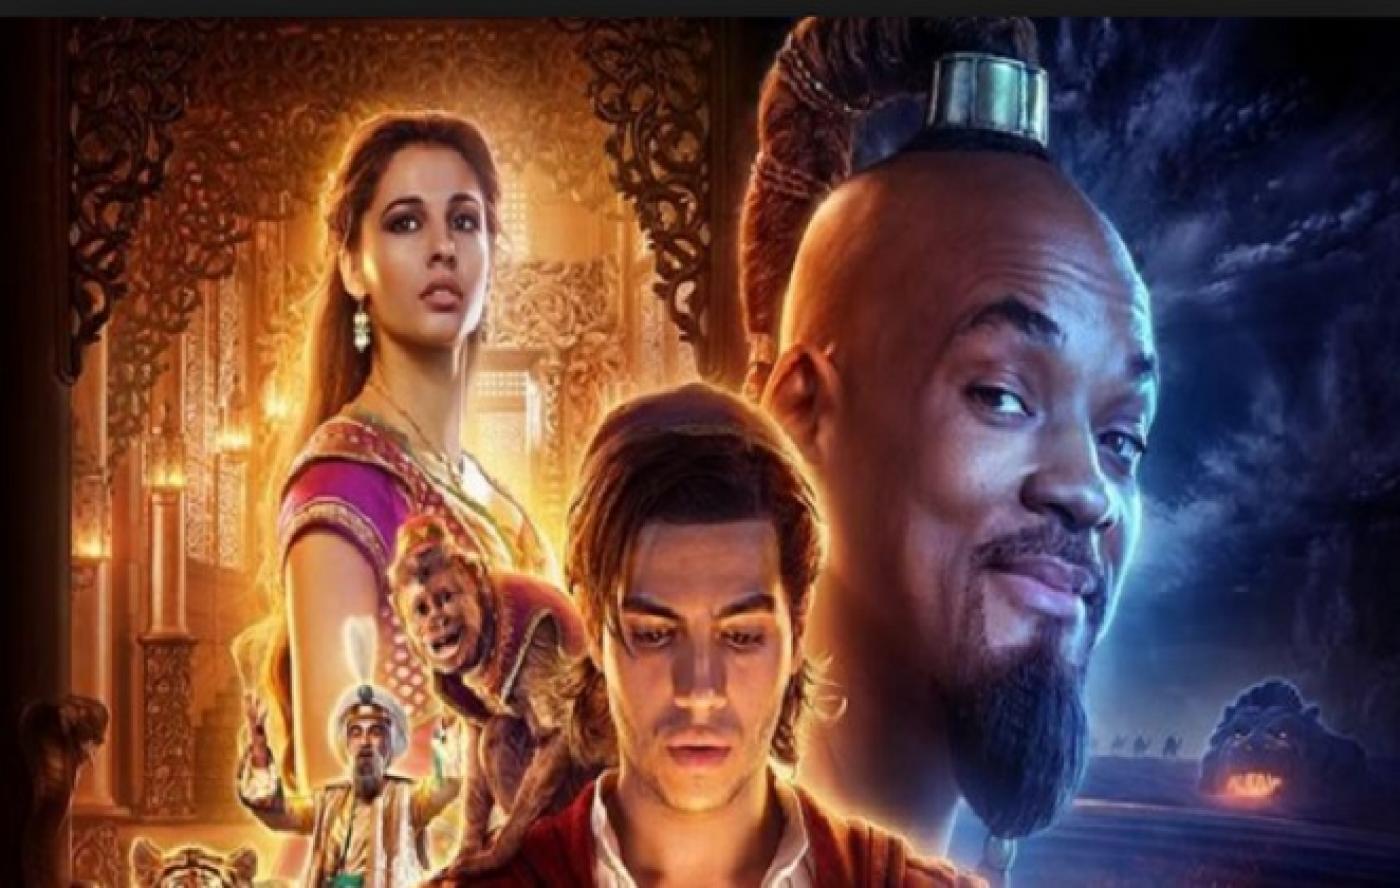 Personagens do filme Aladin: a princesa, Alladin e o gênio. #Pracegover